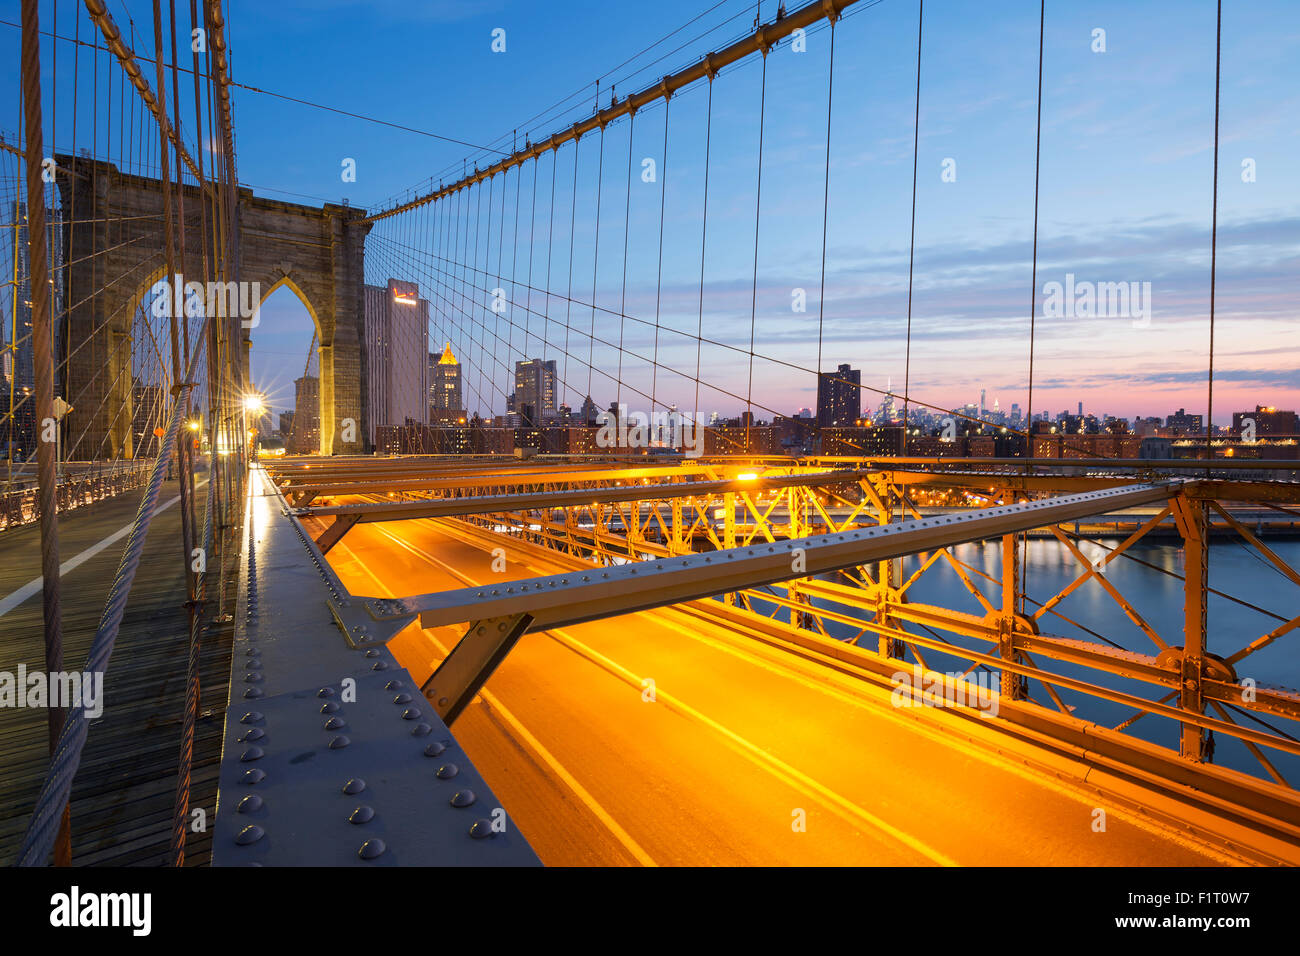 Image de la célèbre Brooklyn Bridge au lever du soleil. Banque D'Images